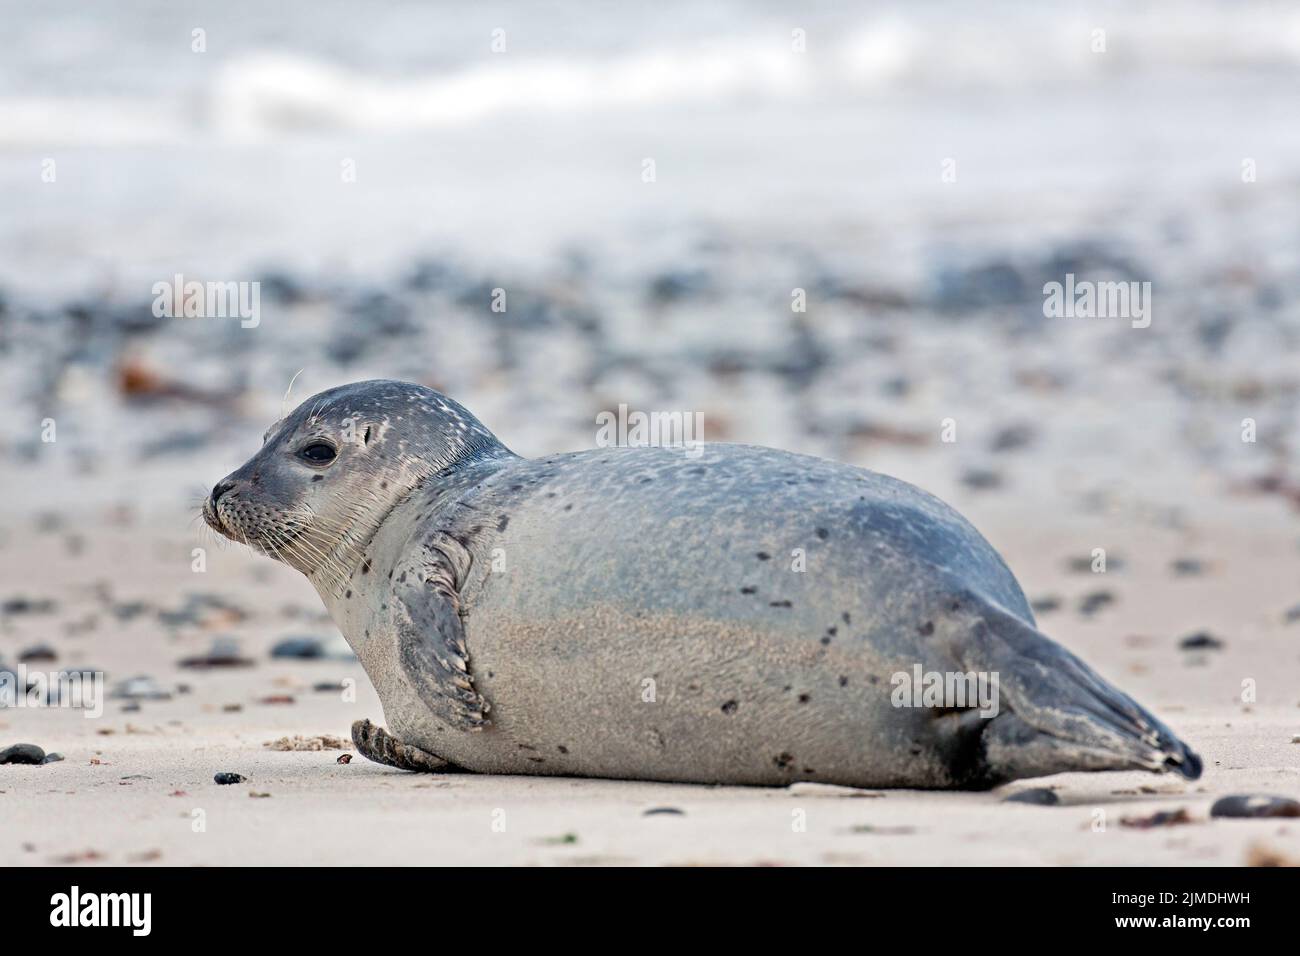 Harbour Seal on a sandy beach / Phoca vitulina  -  Phoca vitulina vitulina Stock Photo